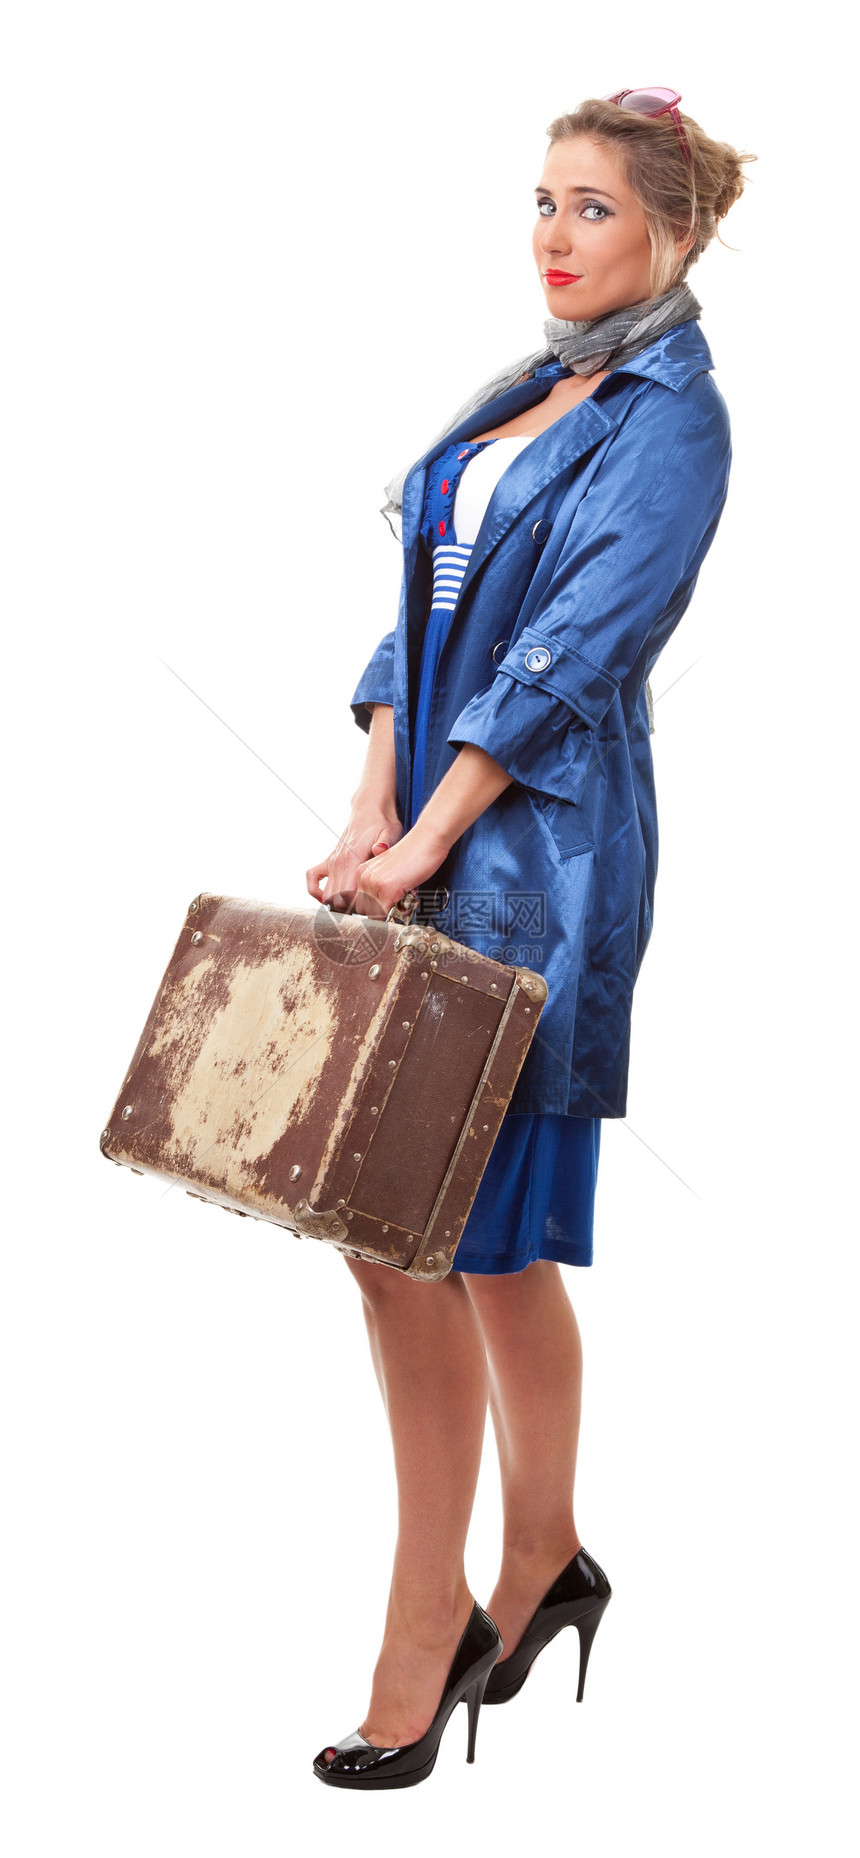 单身单身妇女旅行围巾白色衣服披肩悲伤裙子行李历史冒充重量图片